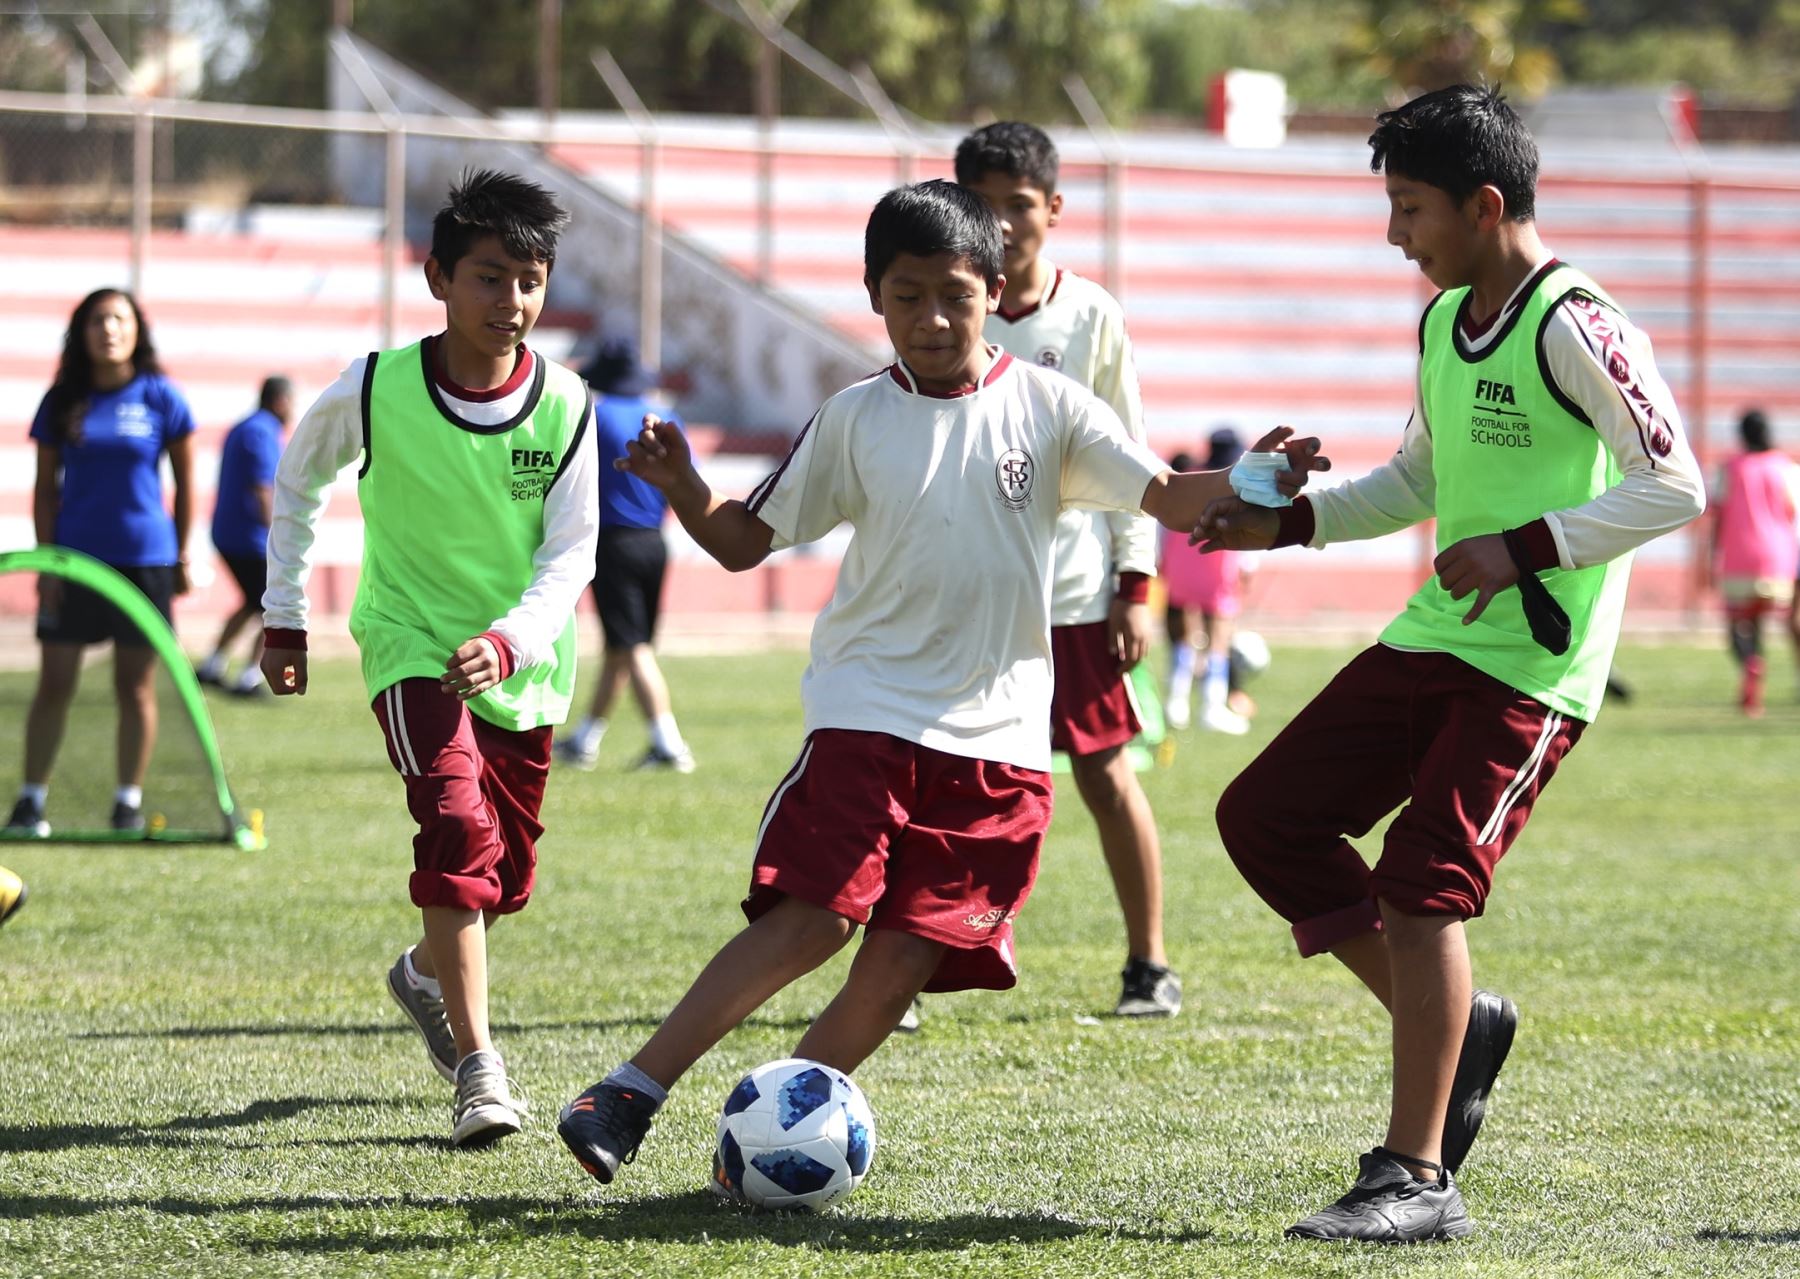 El programa FIFA Football for Schools llegó a su fin luego de tres días de duración en la ciudad de Ayacucho.